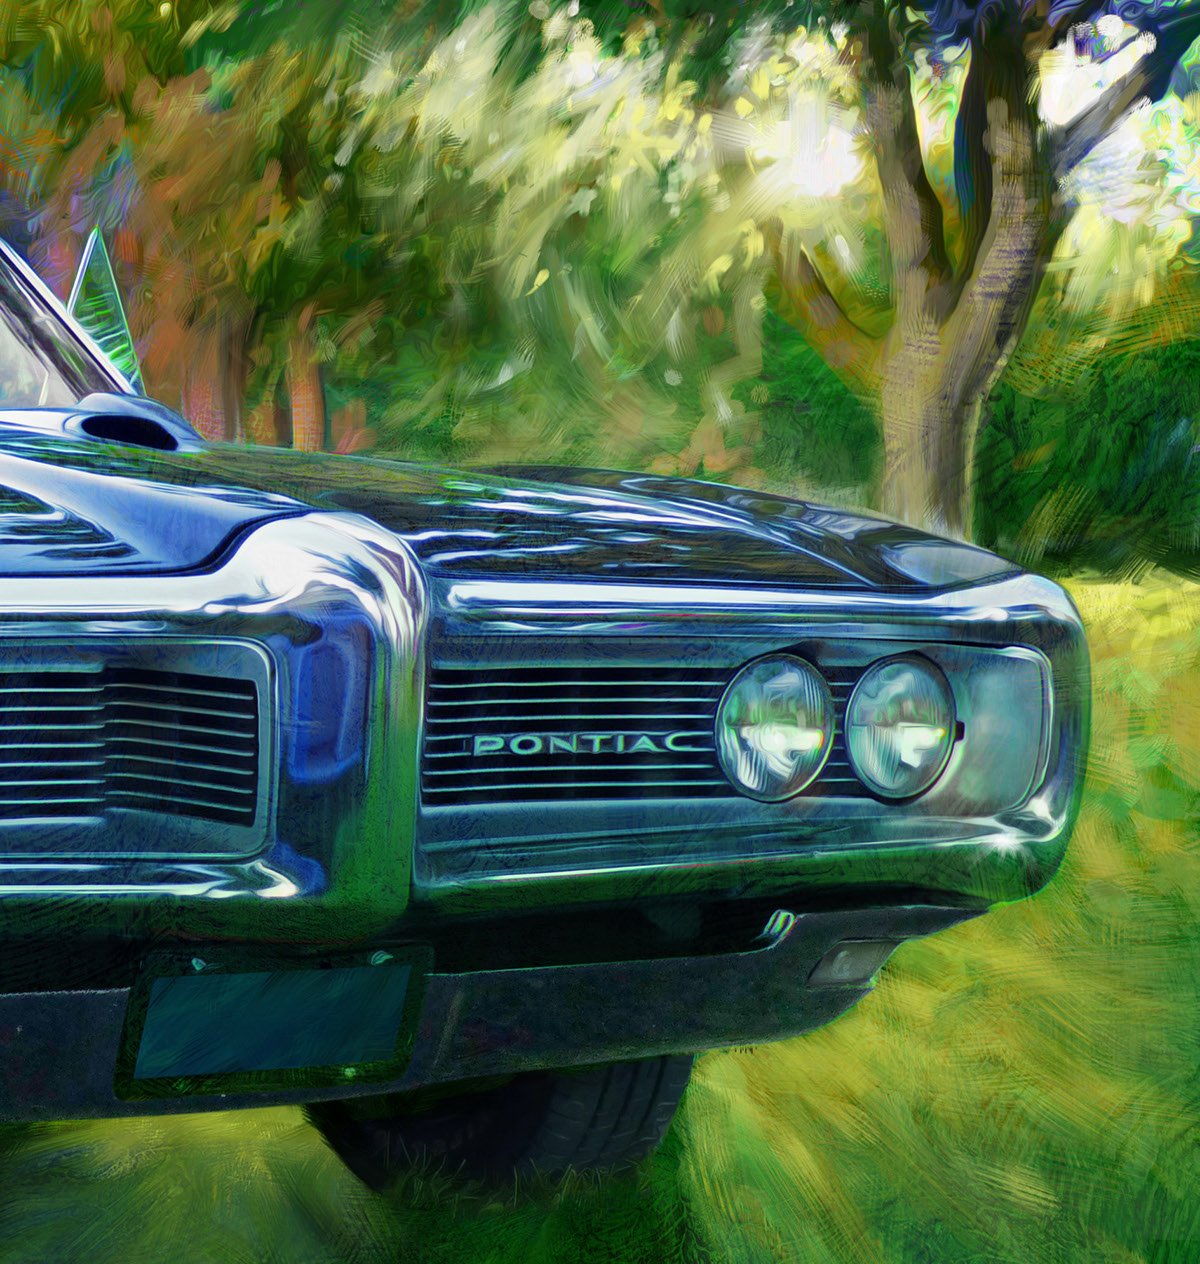 Detroit Automotive car art Car Illustration Garth Glazier car paintings automotive art Pontiac buick